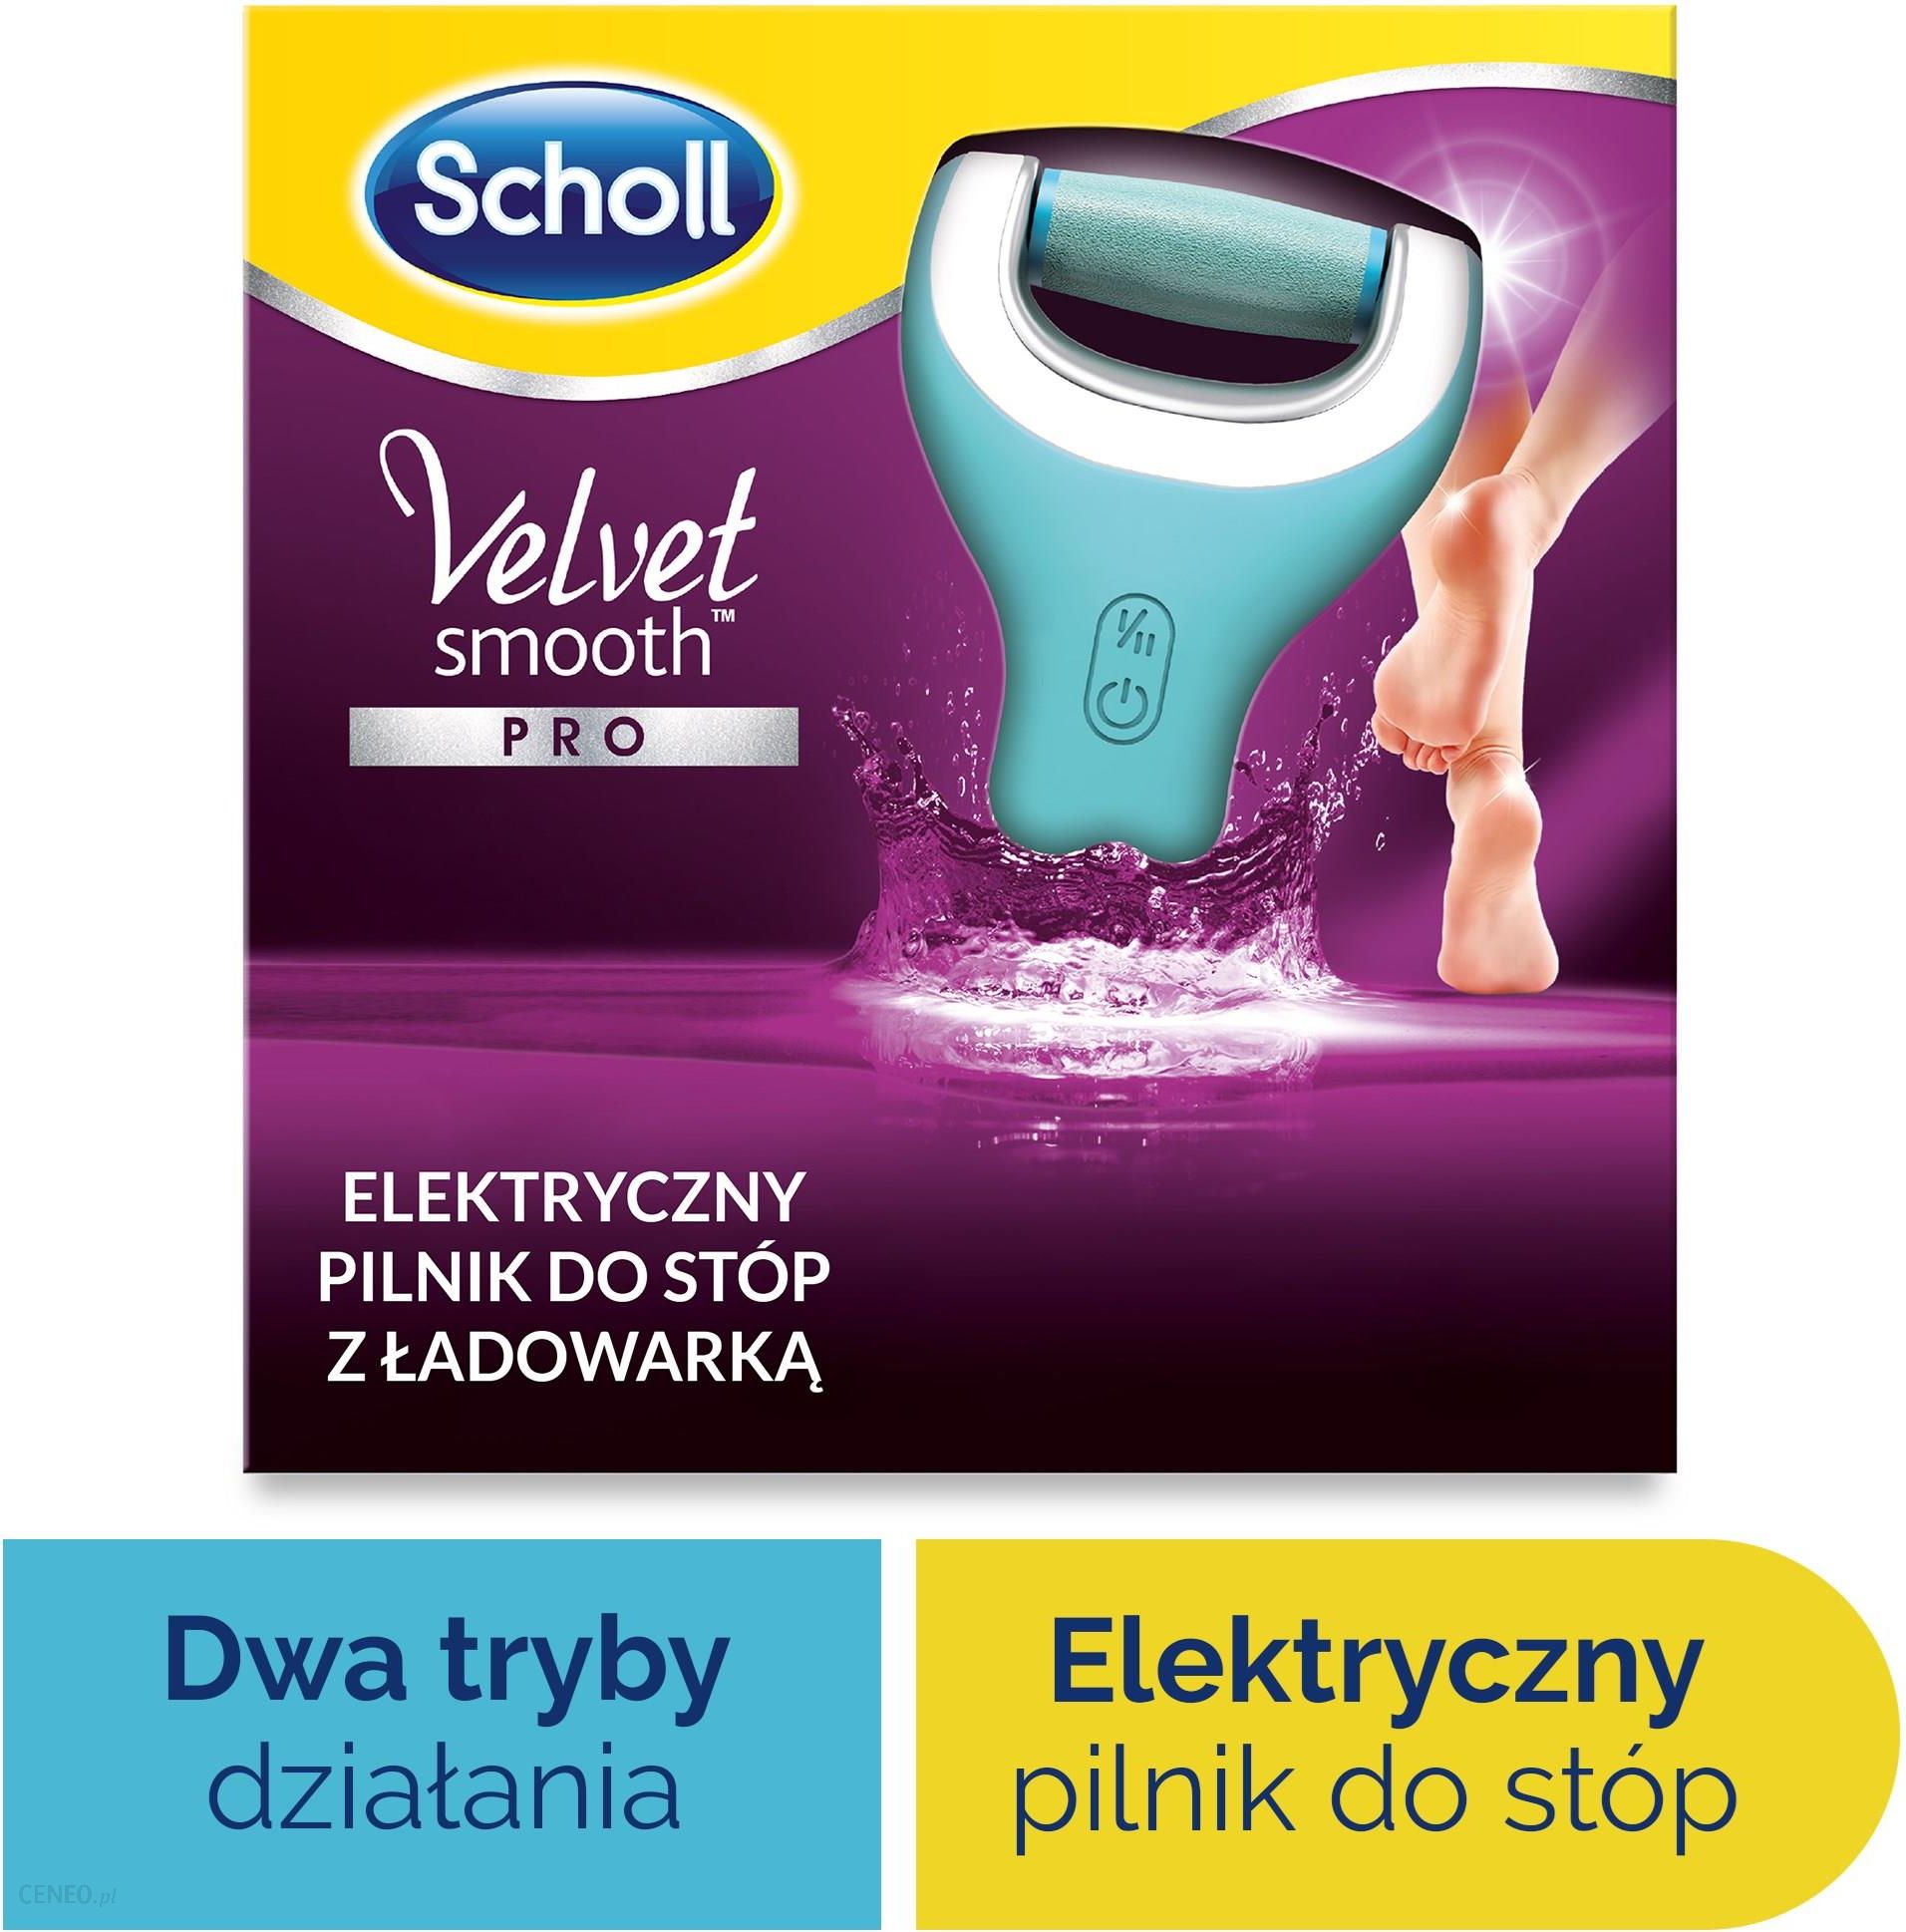 Scholl Velvet Smooth elektryczny pilnik do stóp Wet&Dry z ładowarką